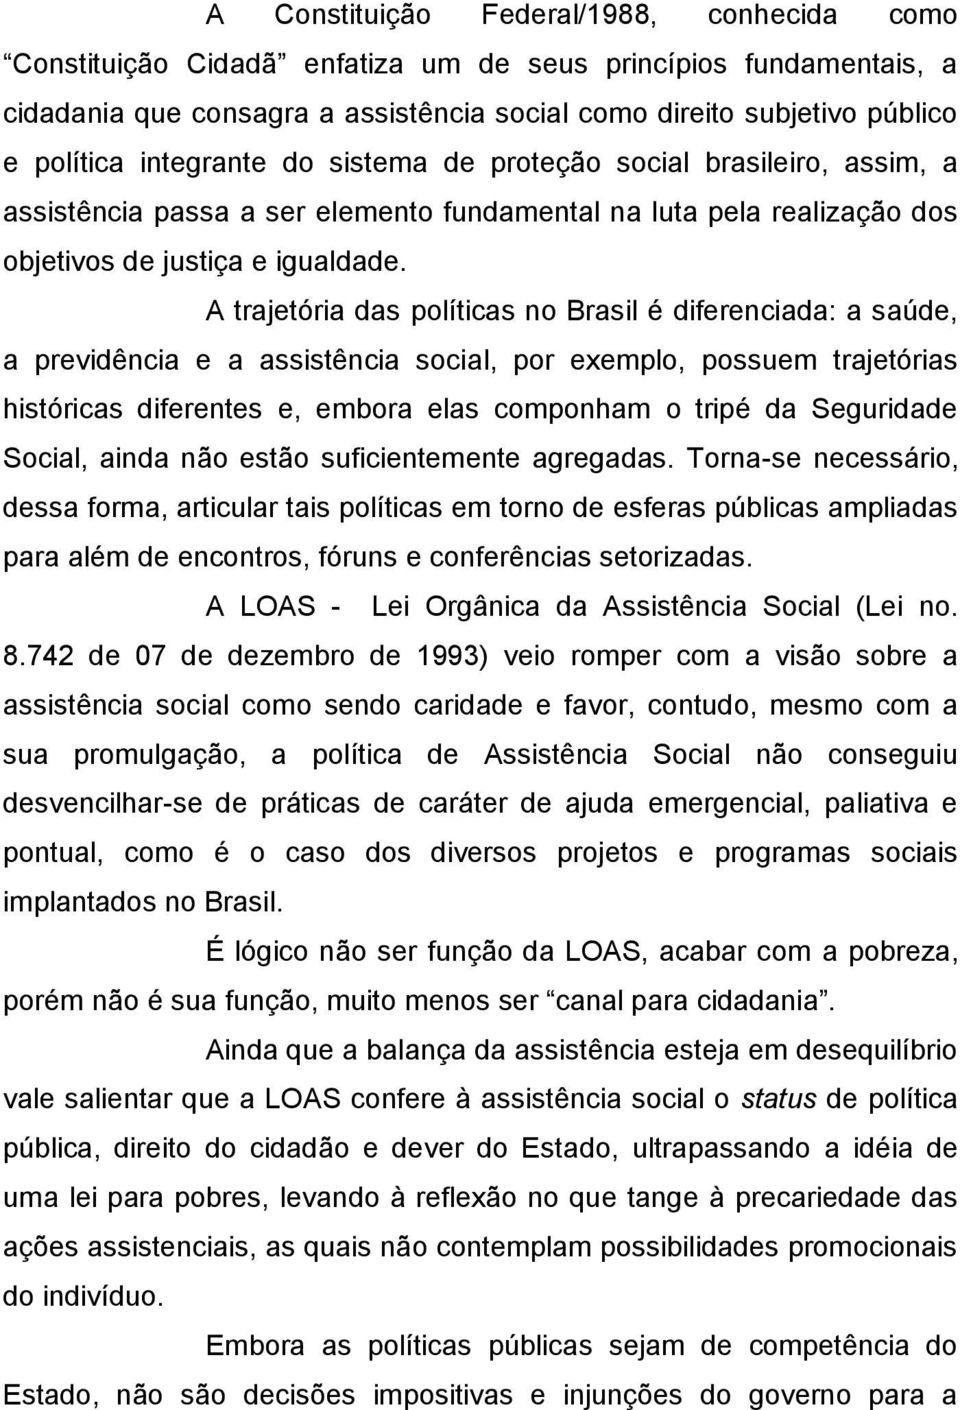 A trajetória das políticas no Brasil é diferenciada: a saúde, a previdência e a assistência social, por exemplo, possuem trajetórias históricas diferentes e, embora elas componham o tripé da